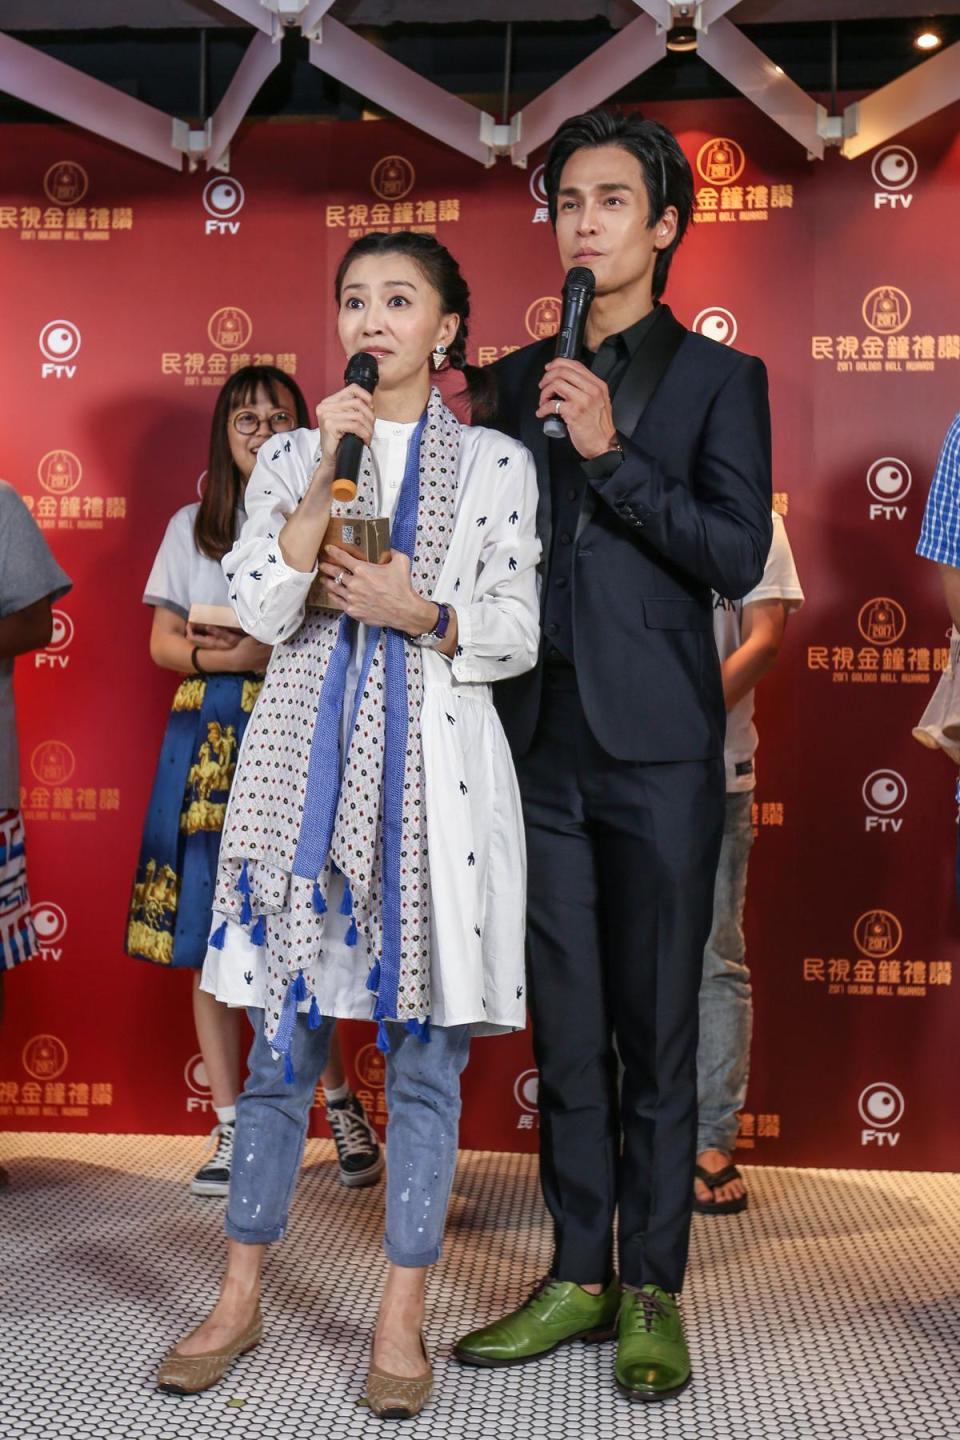 侯怡君主持的《舞力全開》拿下綜藝節目獎，稍晚她也出席了慶功宴。